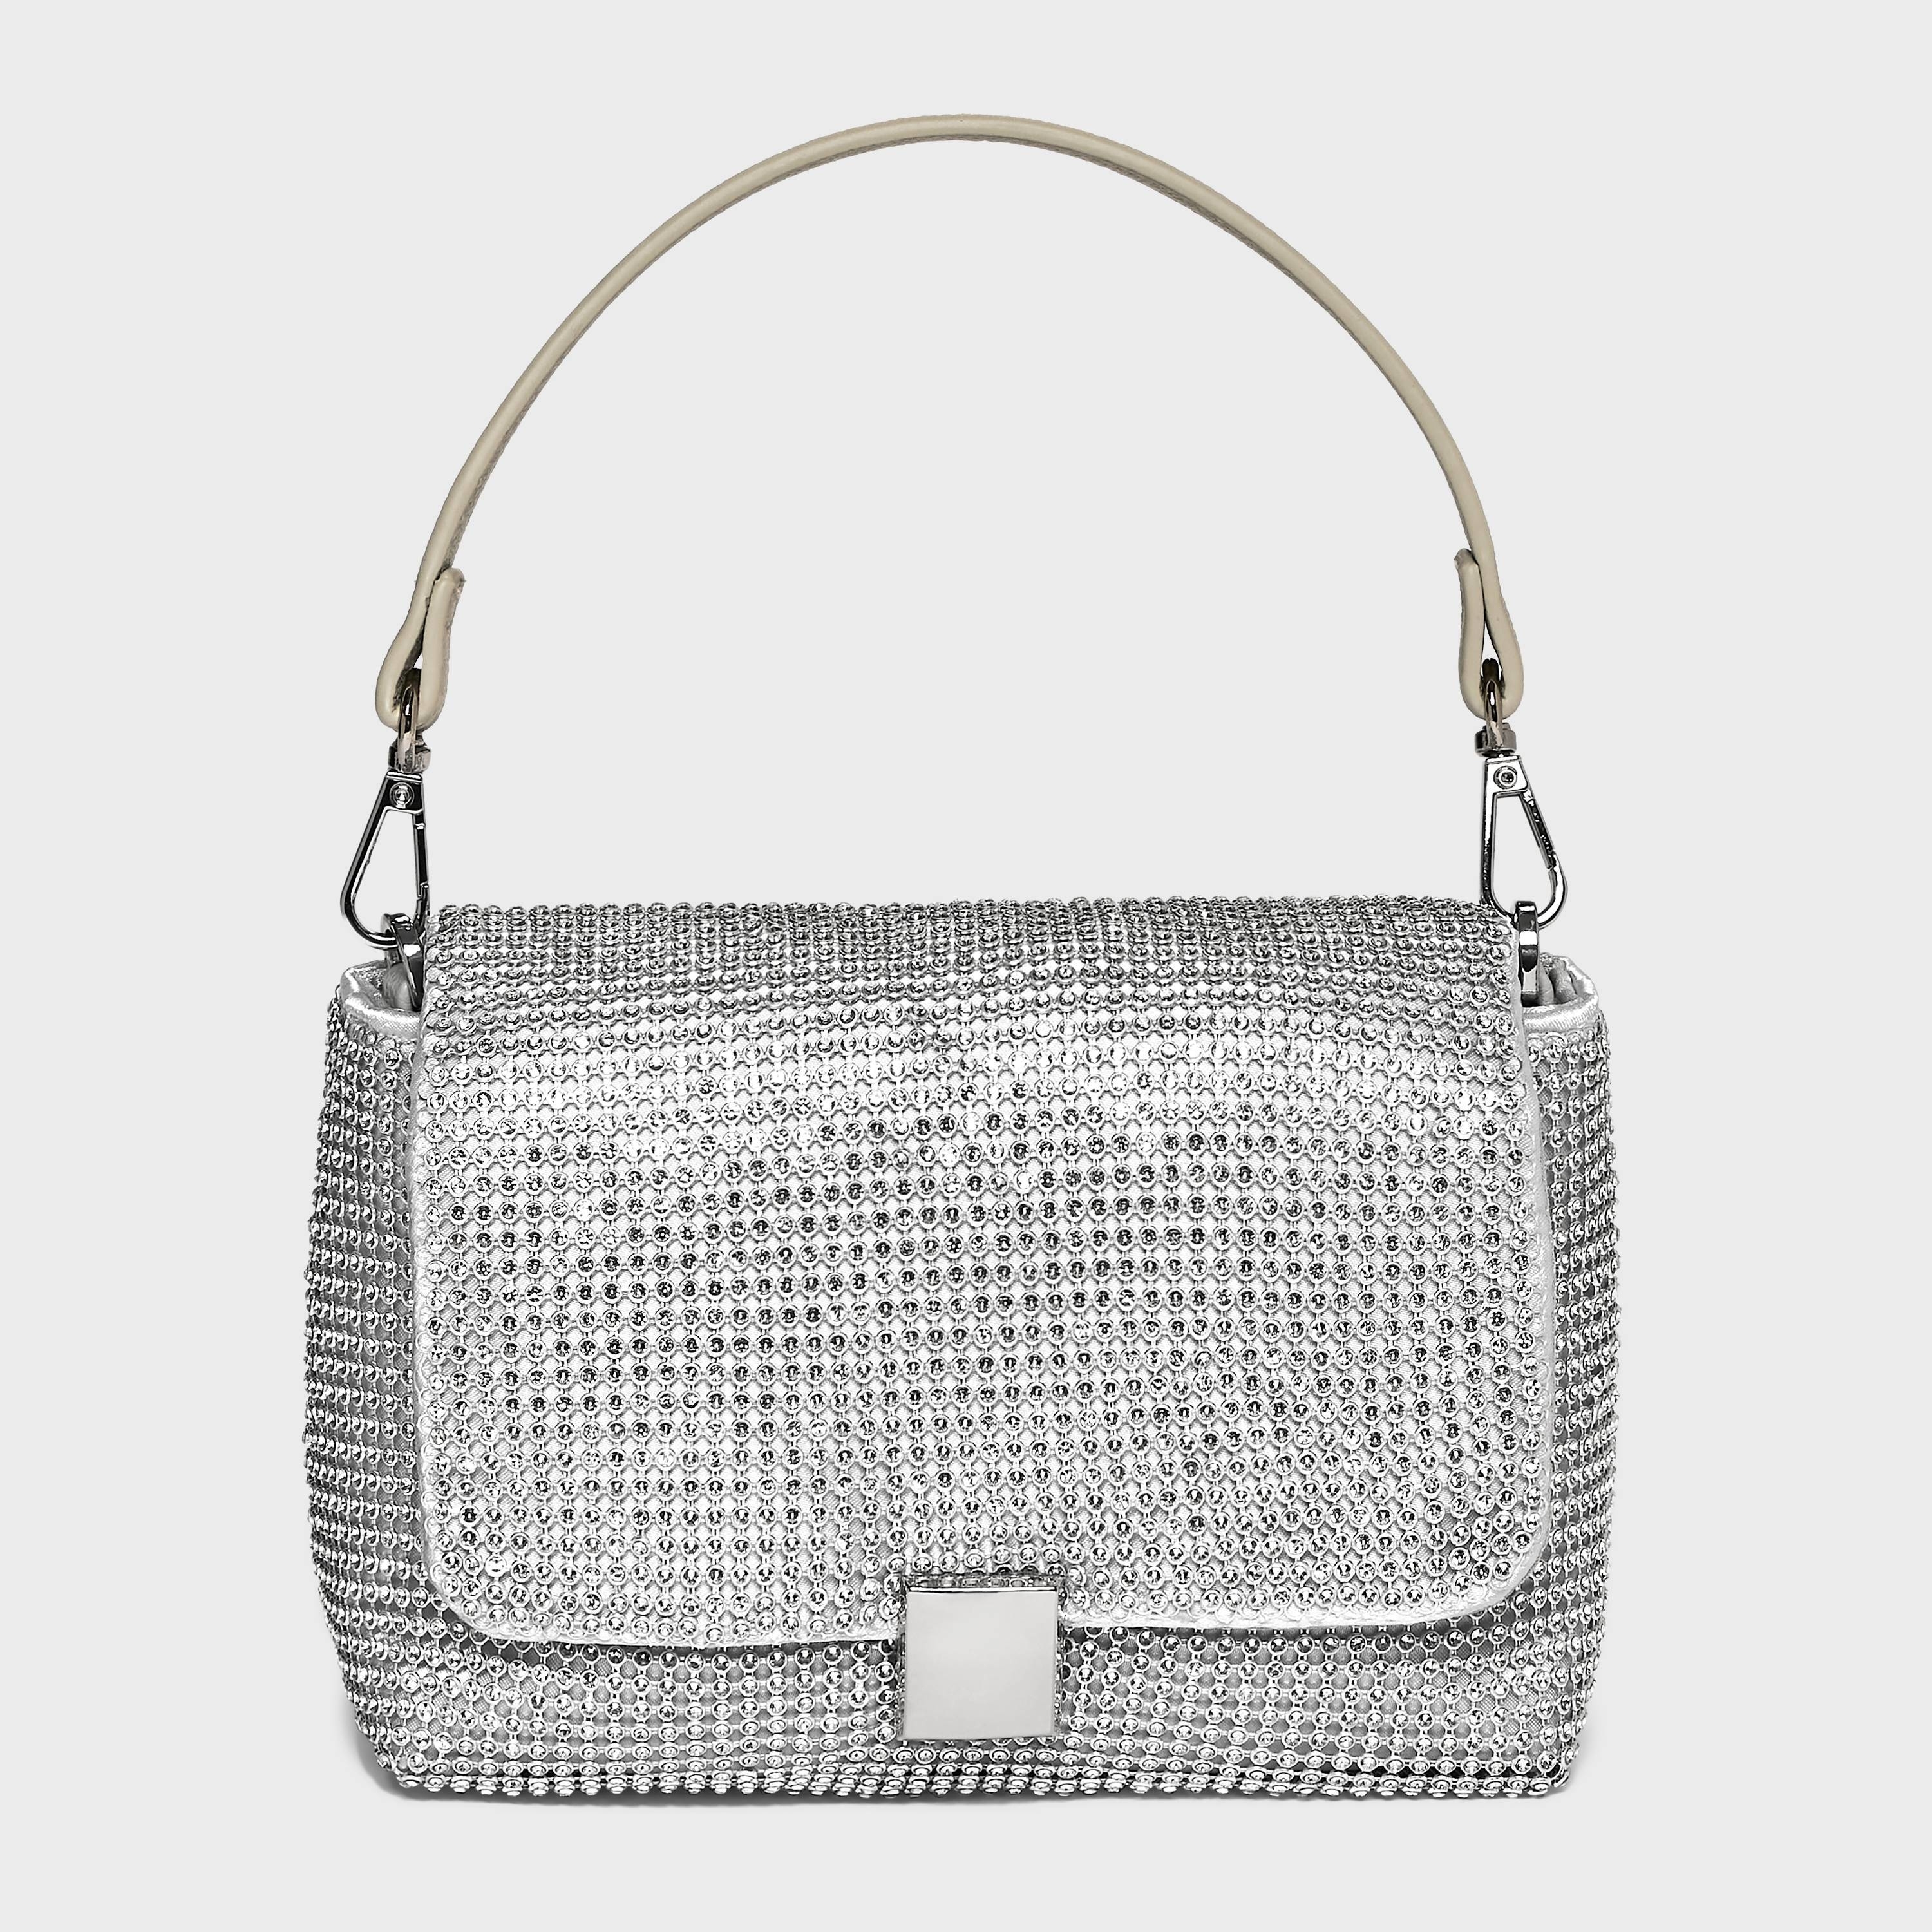 A sparkly handbag with a flap design